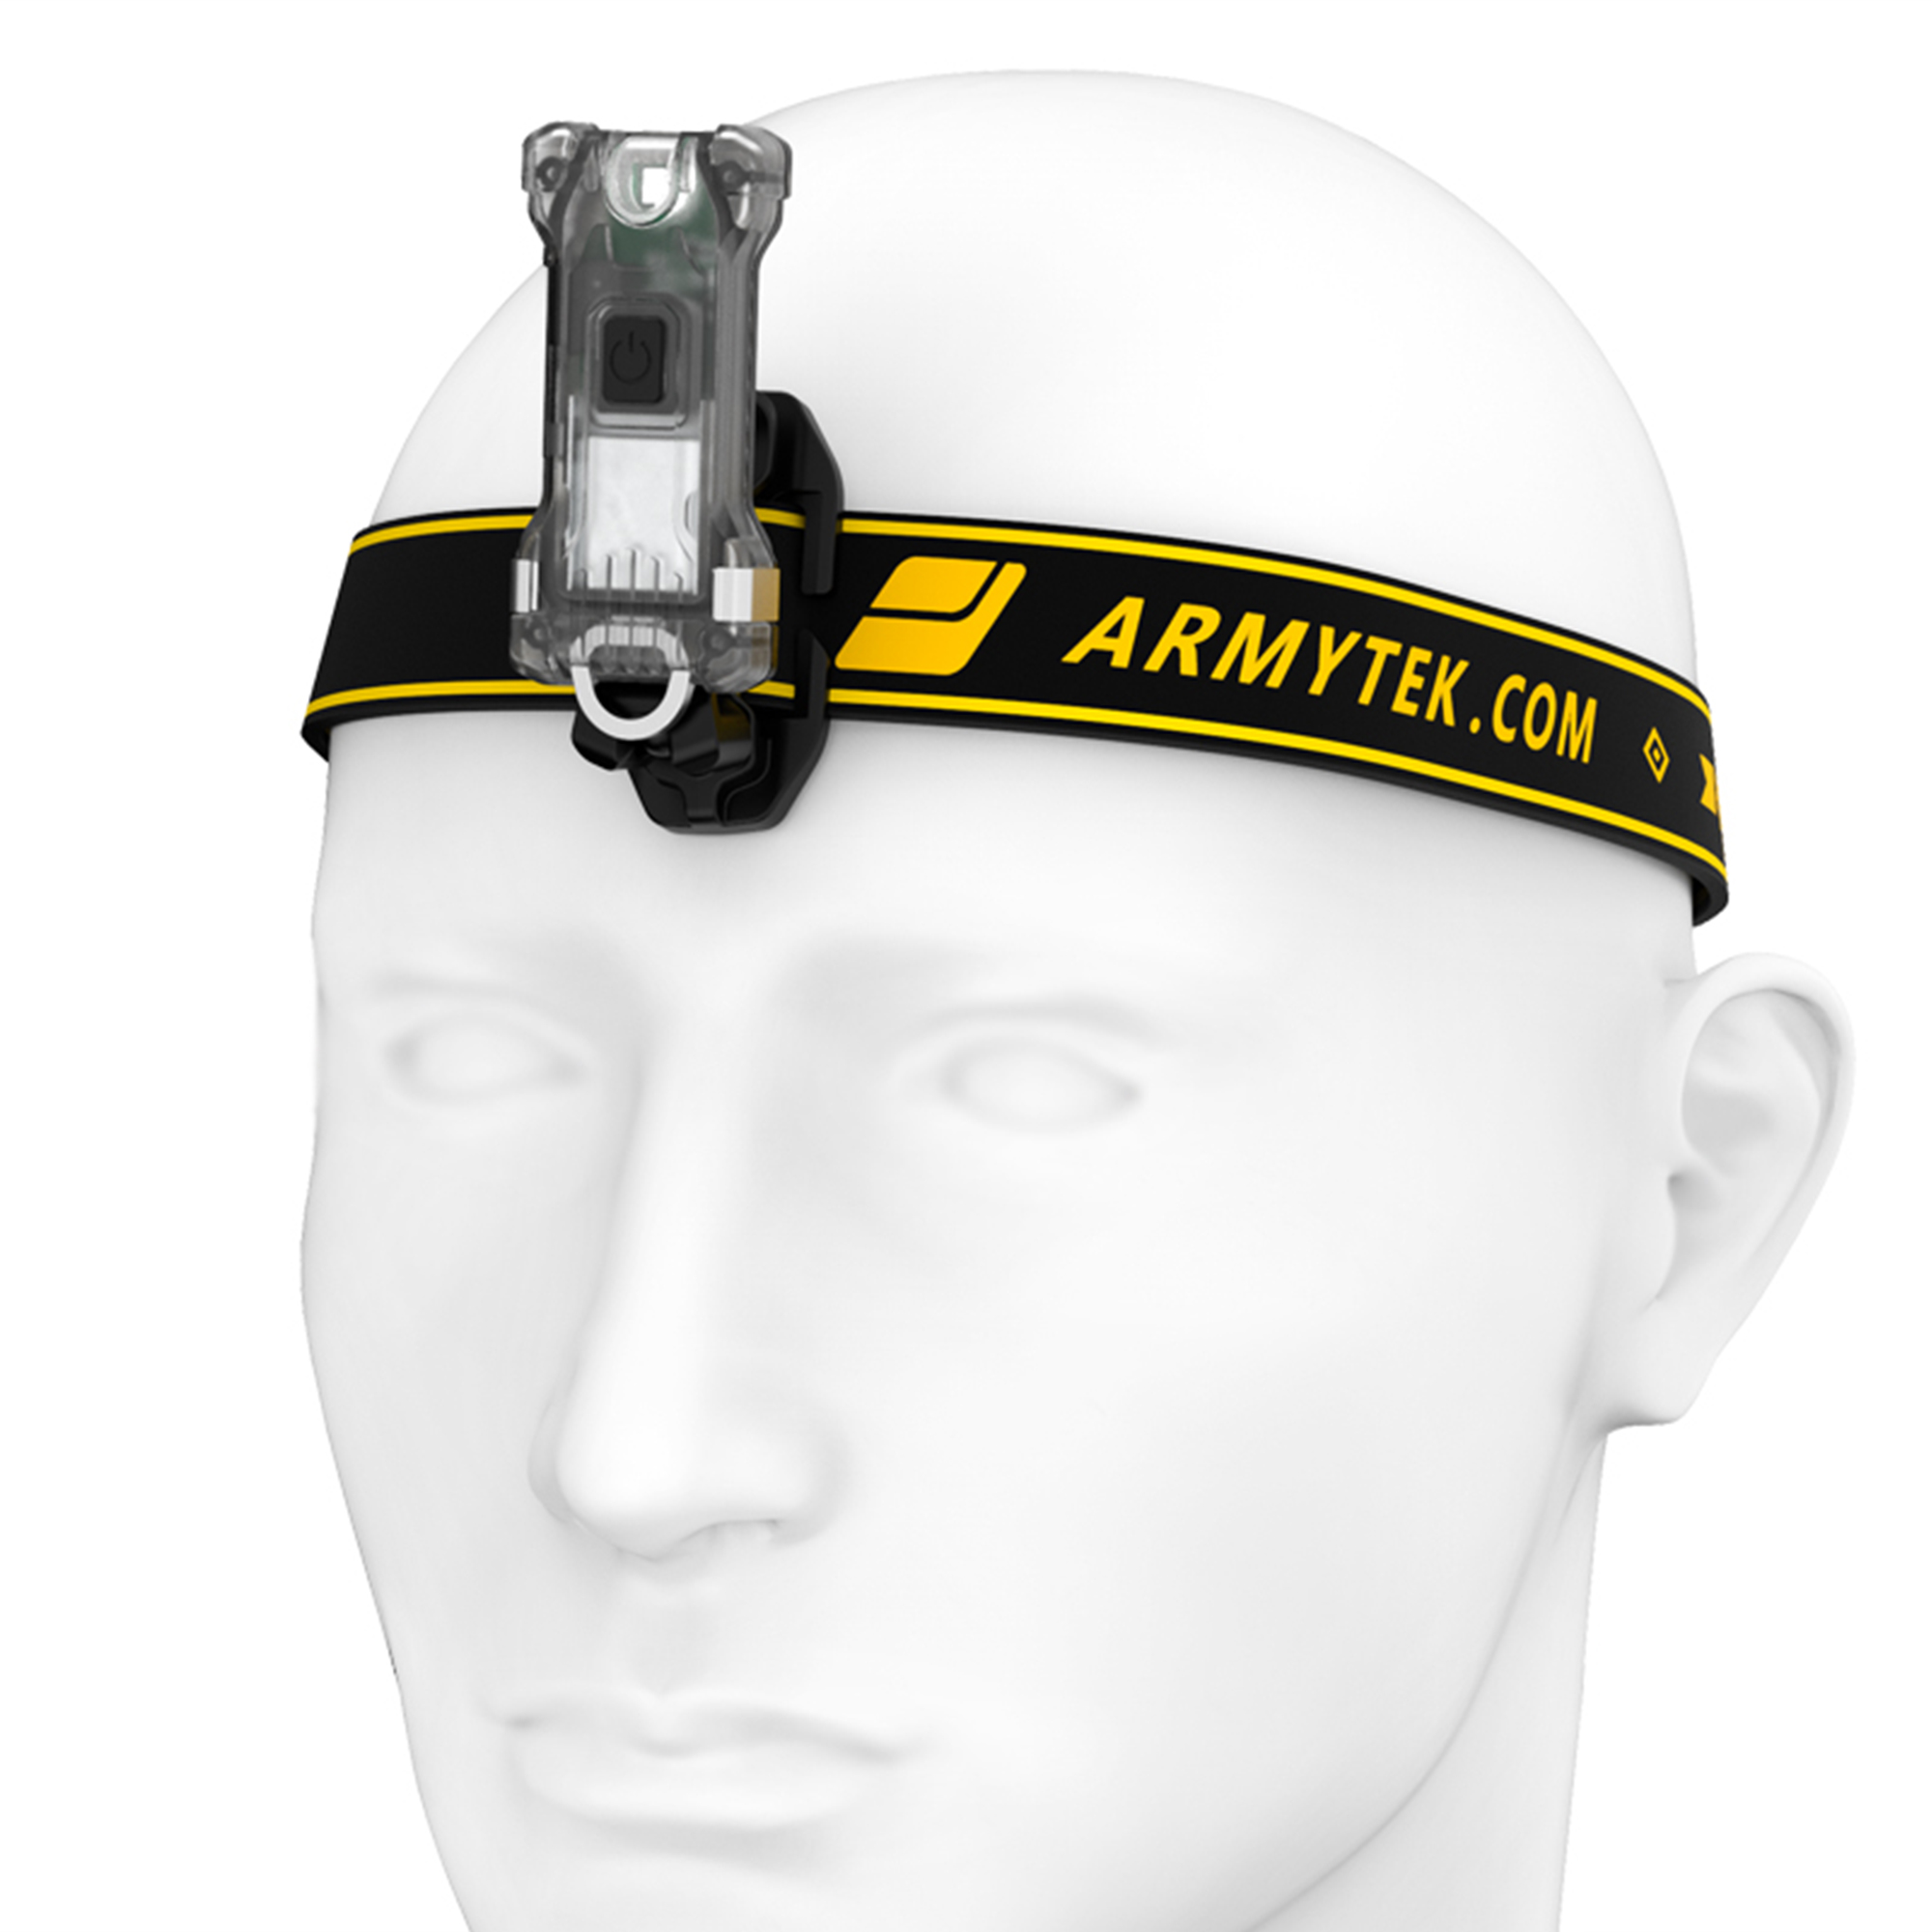 Armytek® Zippy Extended Set Grey